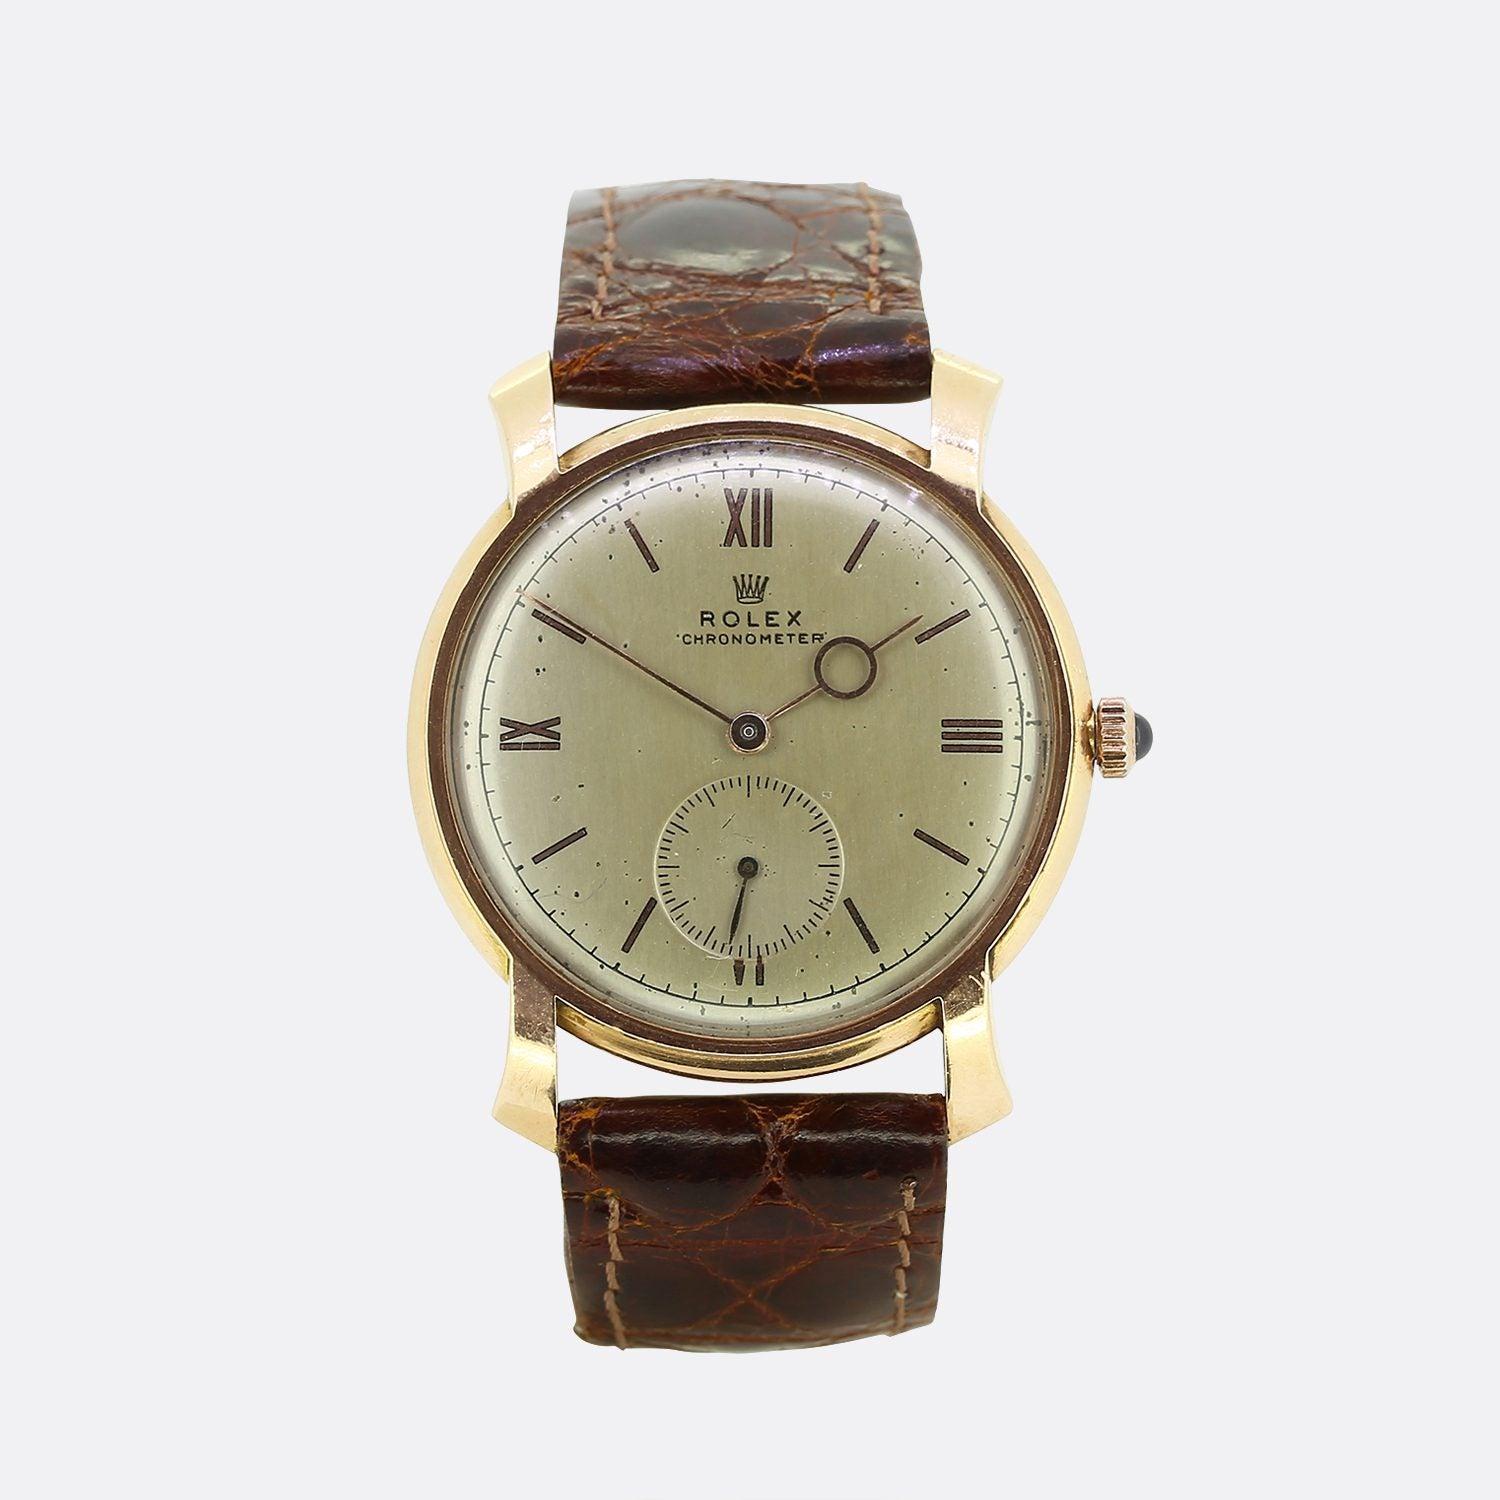 Dies ist eine 1940er Jahre 14ct Gelbgold unisex Rolex Chronometer Uhr. Das Zifferblatt ist cremefarben mit roségoldenen Zeigern und römischen Ziffern bei 12, 3, 6 und 9 Uhr. Die Uhr trägt die Signatur Rolex Chronometer